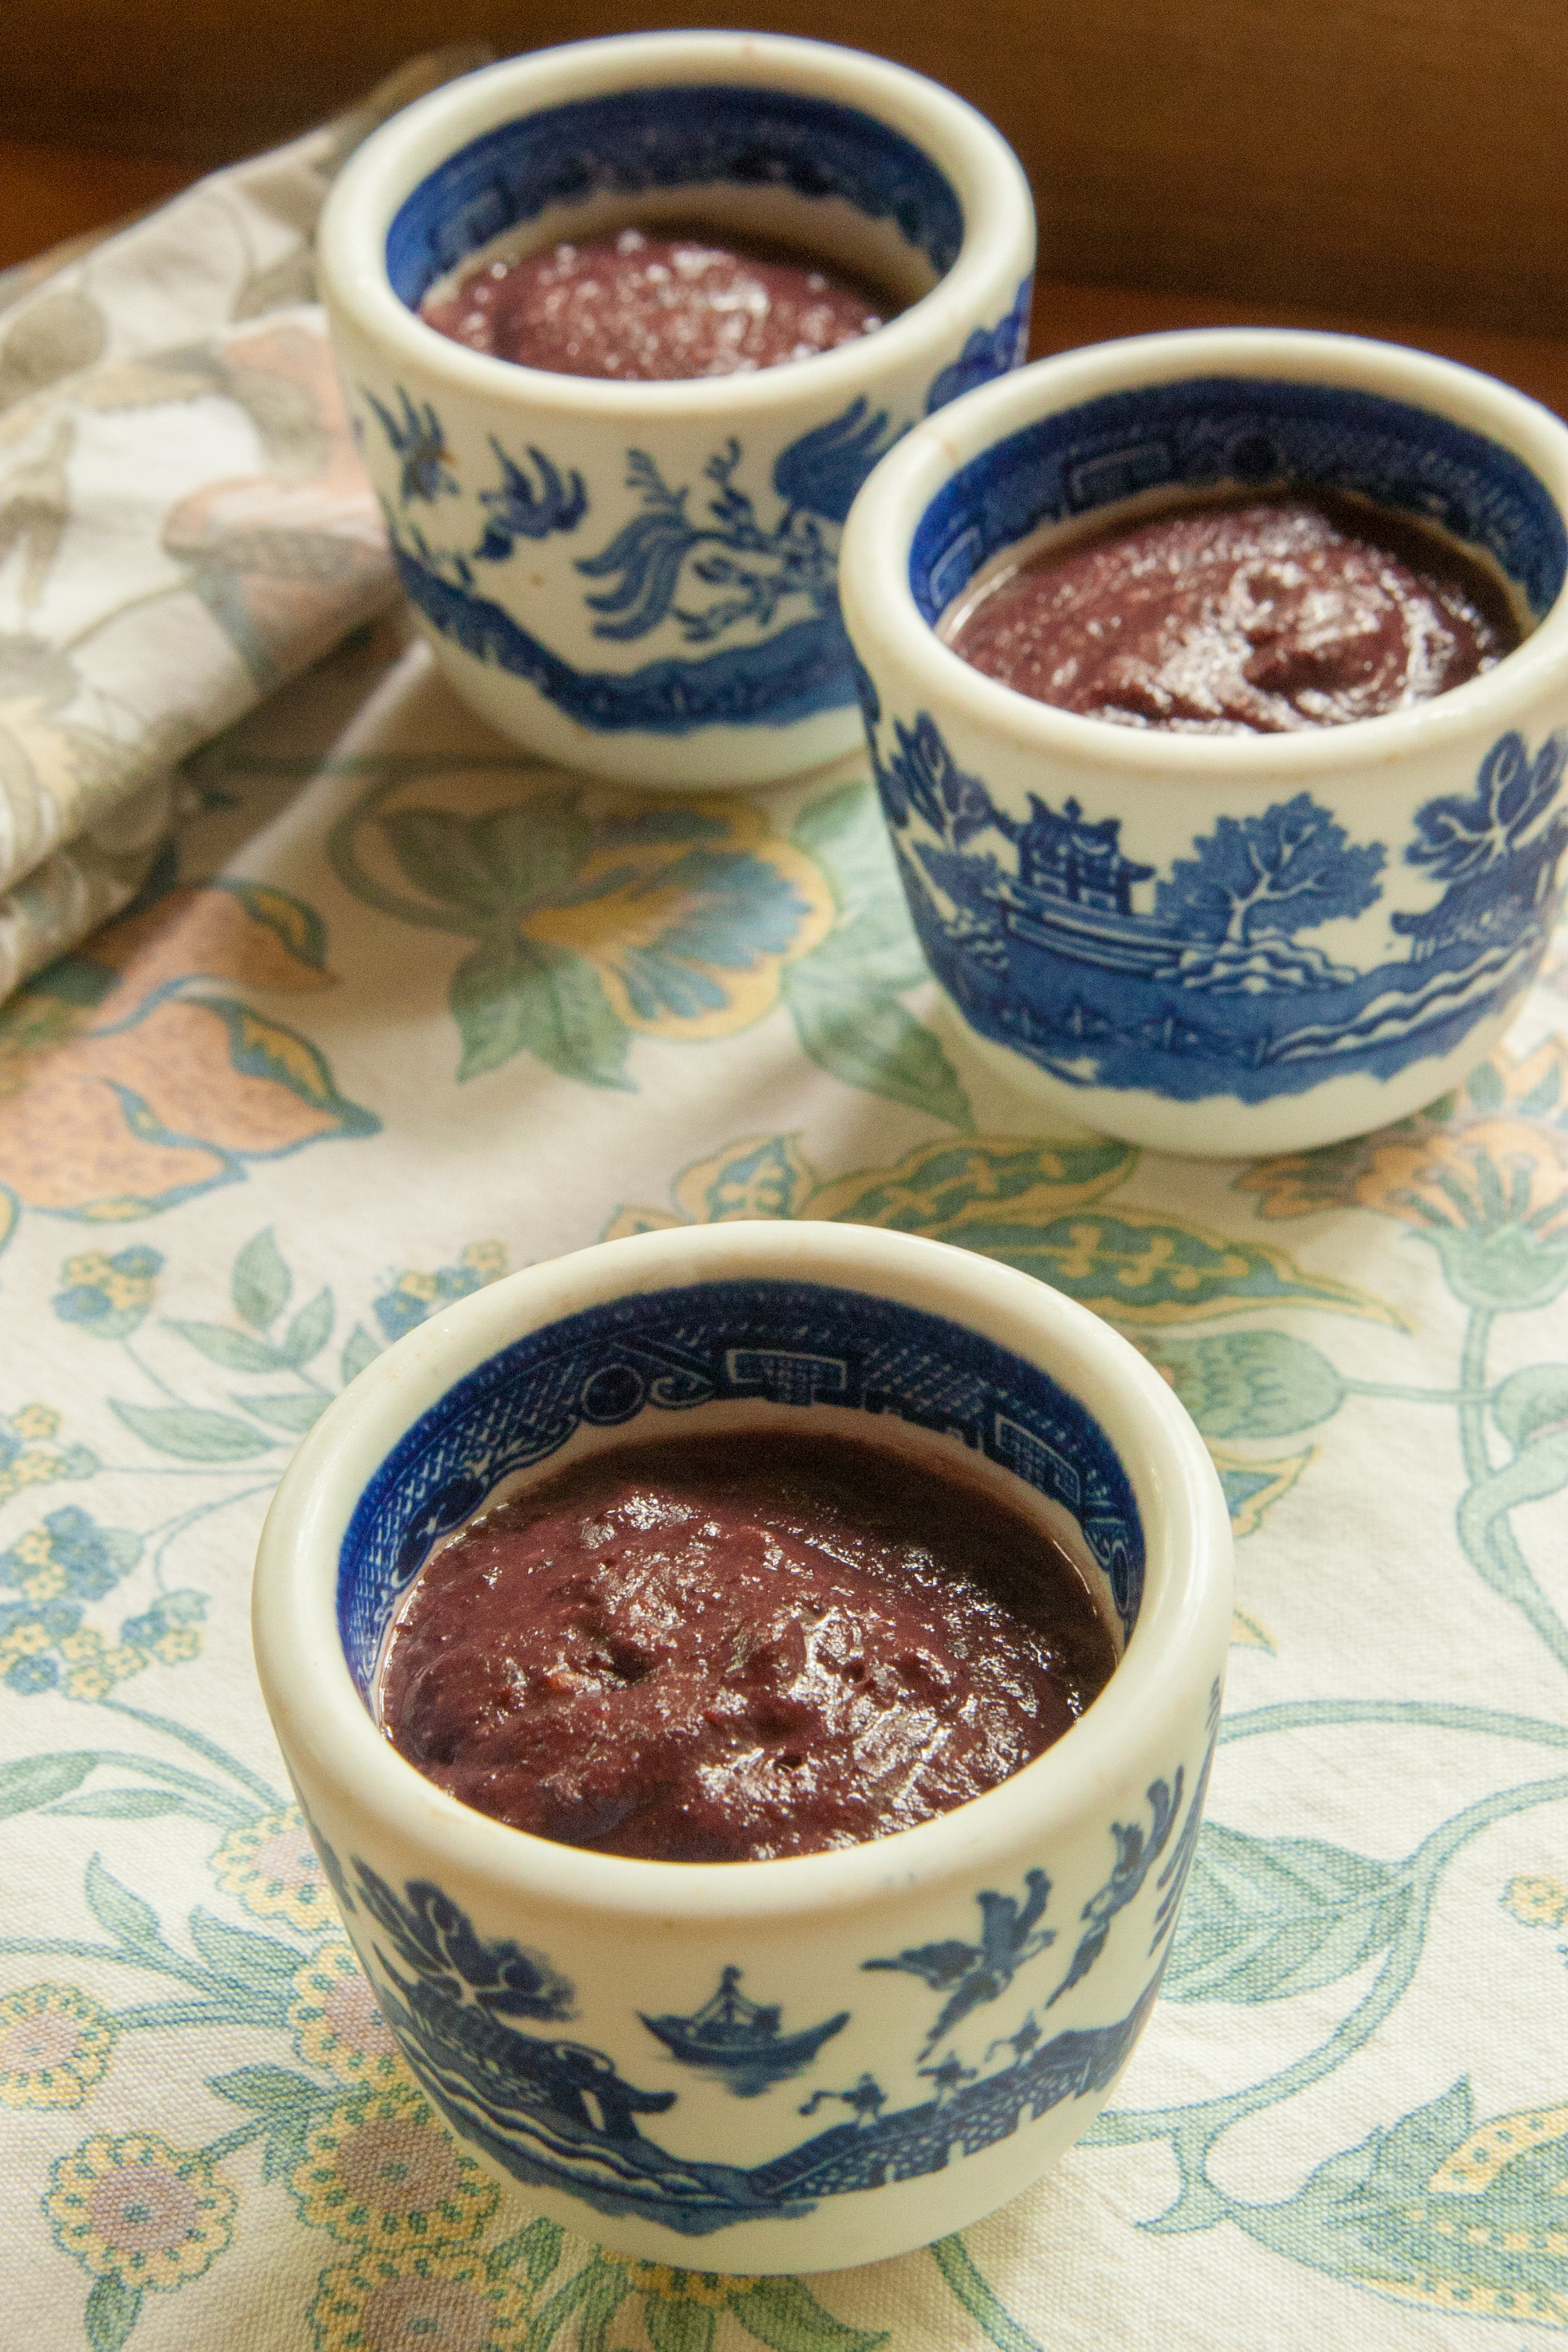 Quick & Easy Serviceberry Pudding Recipe